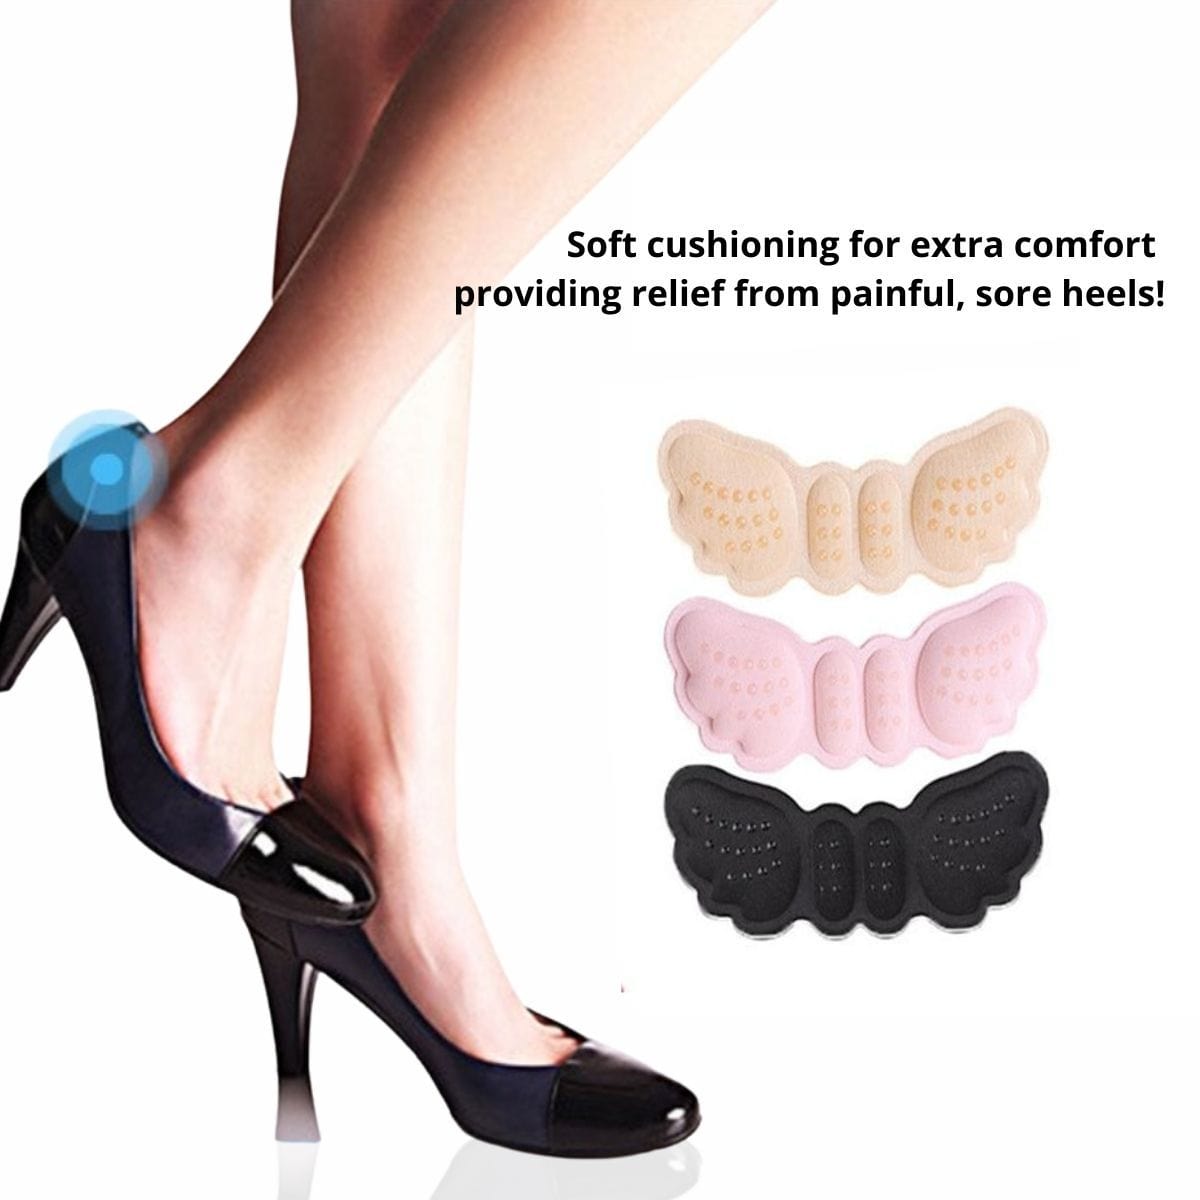 heel-protectors-for-extra-shoe-comfort